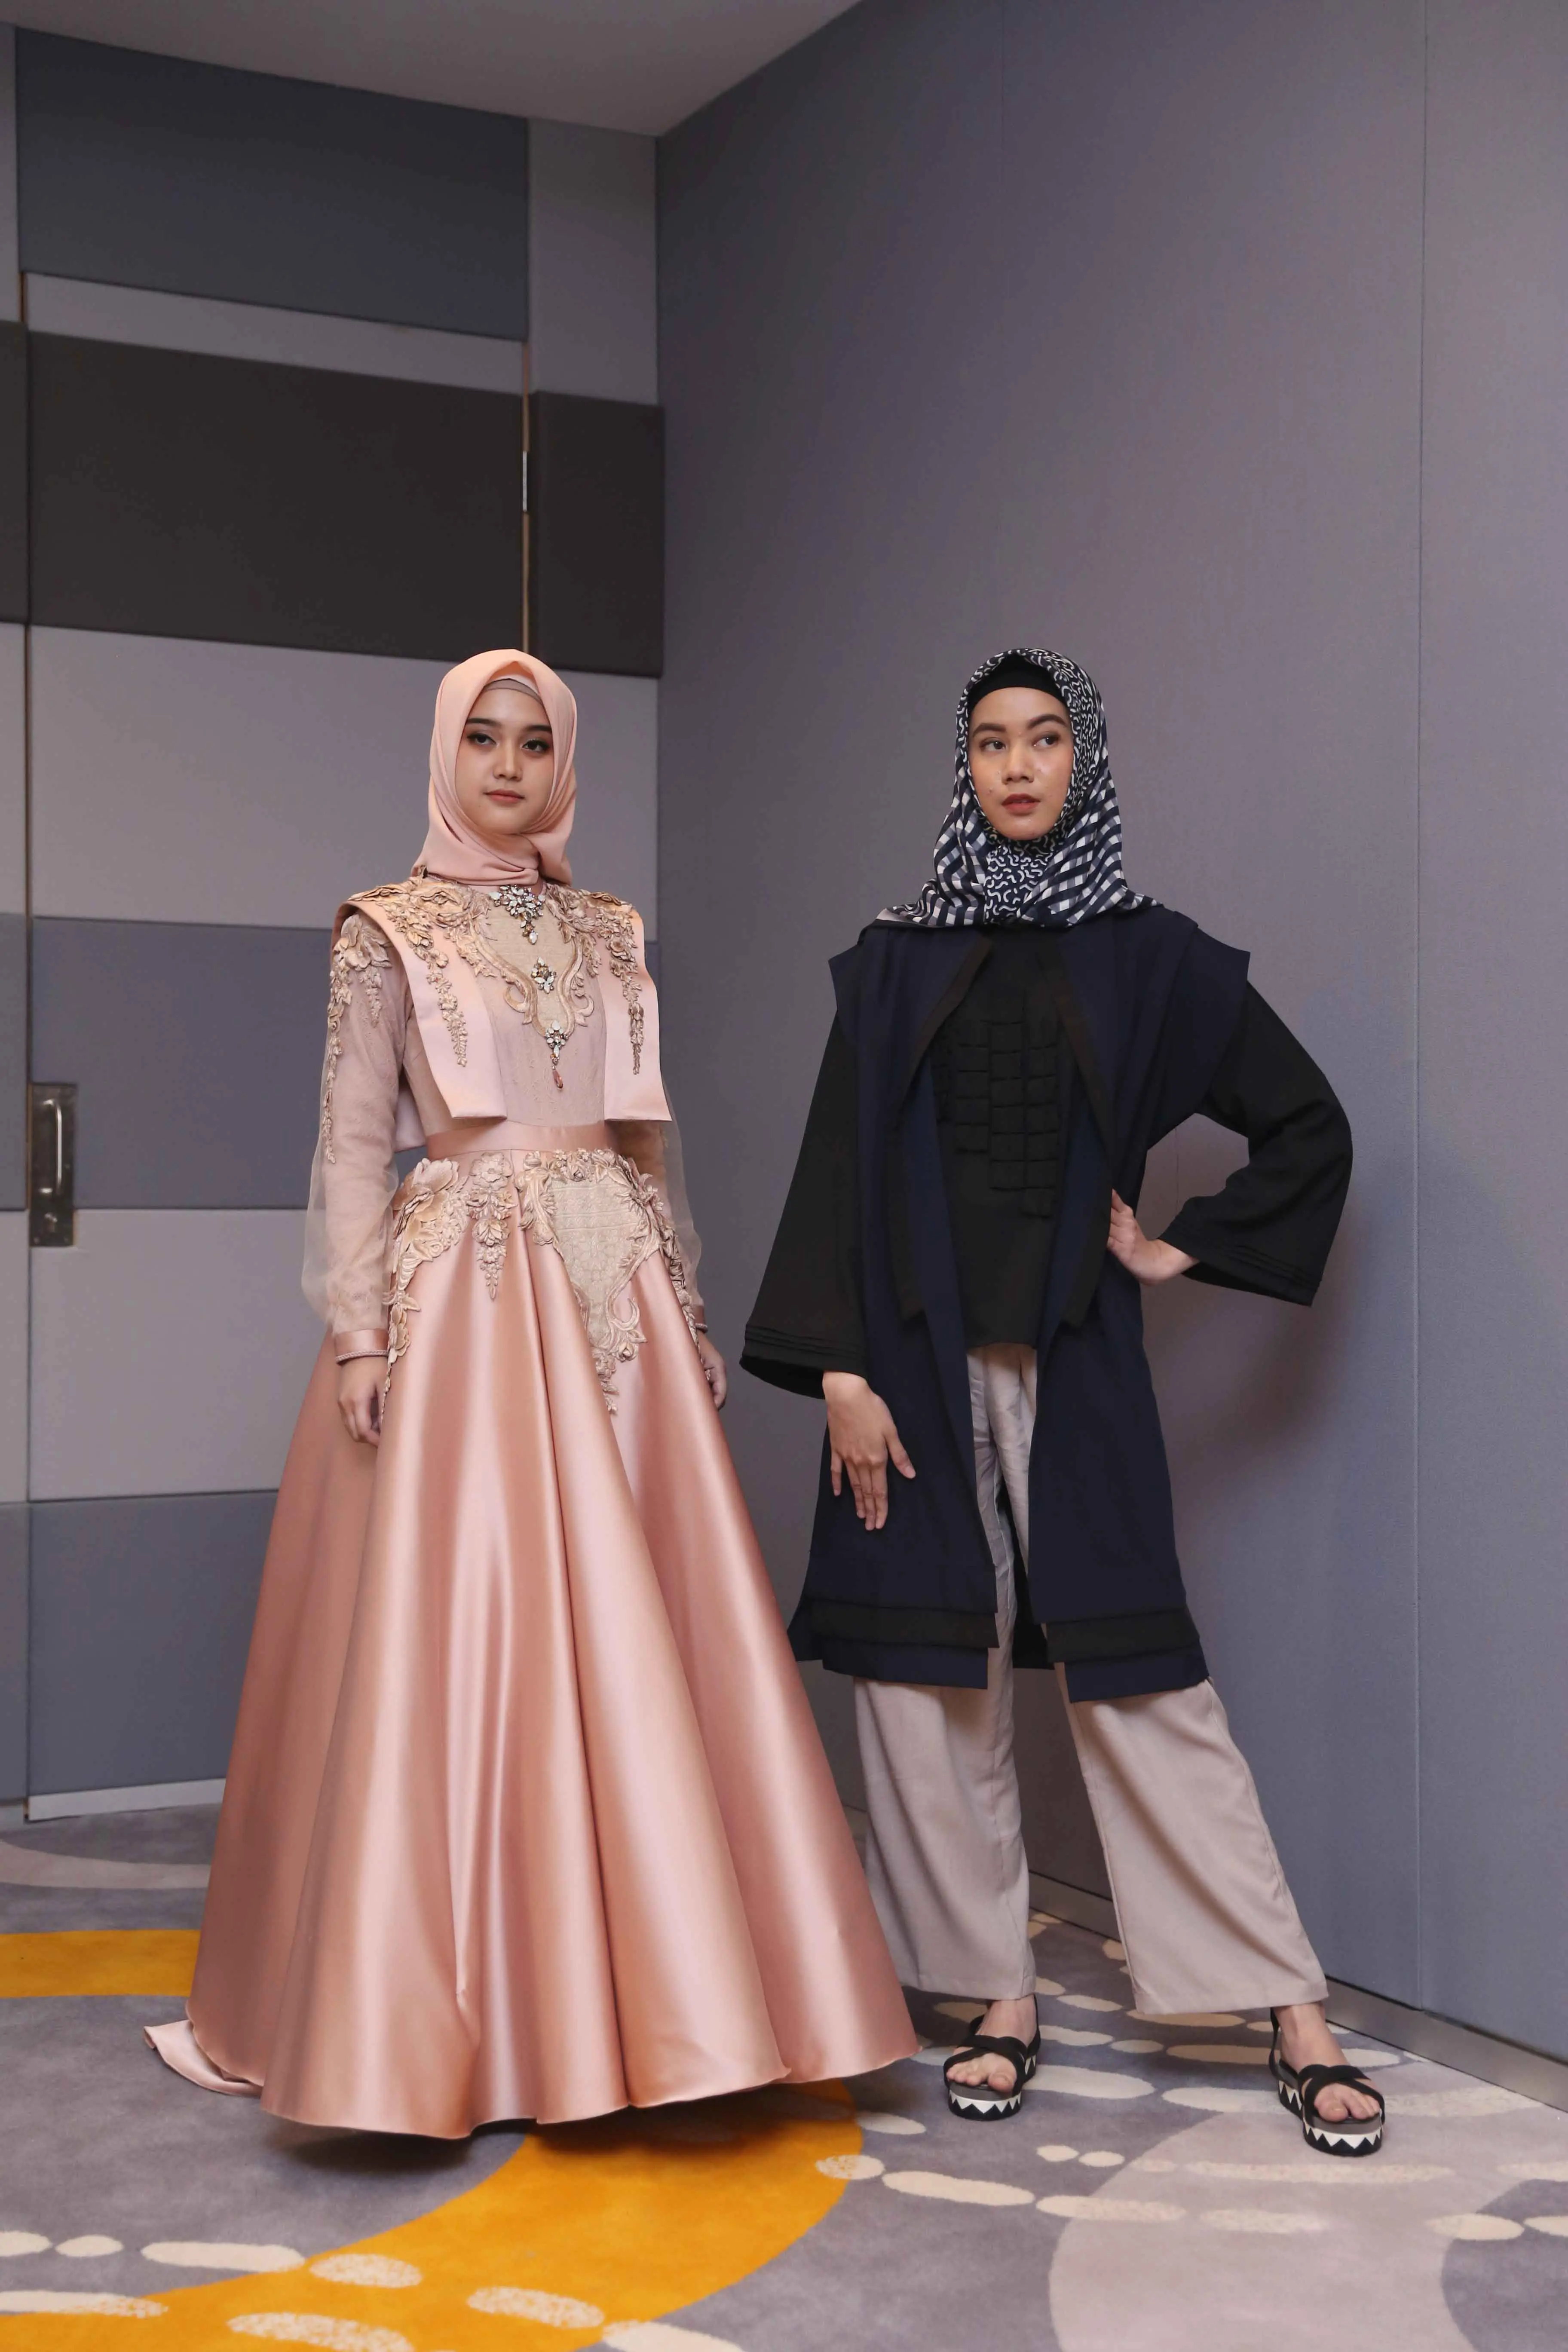 Hijab Festive Week rangkaian kegiatan menyambut Ramadan. (Nurwahyunan / Bintang.com)